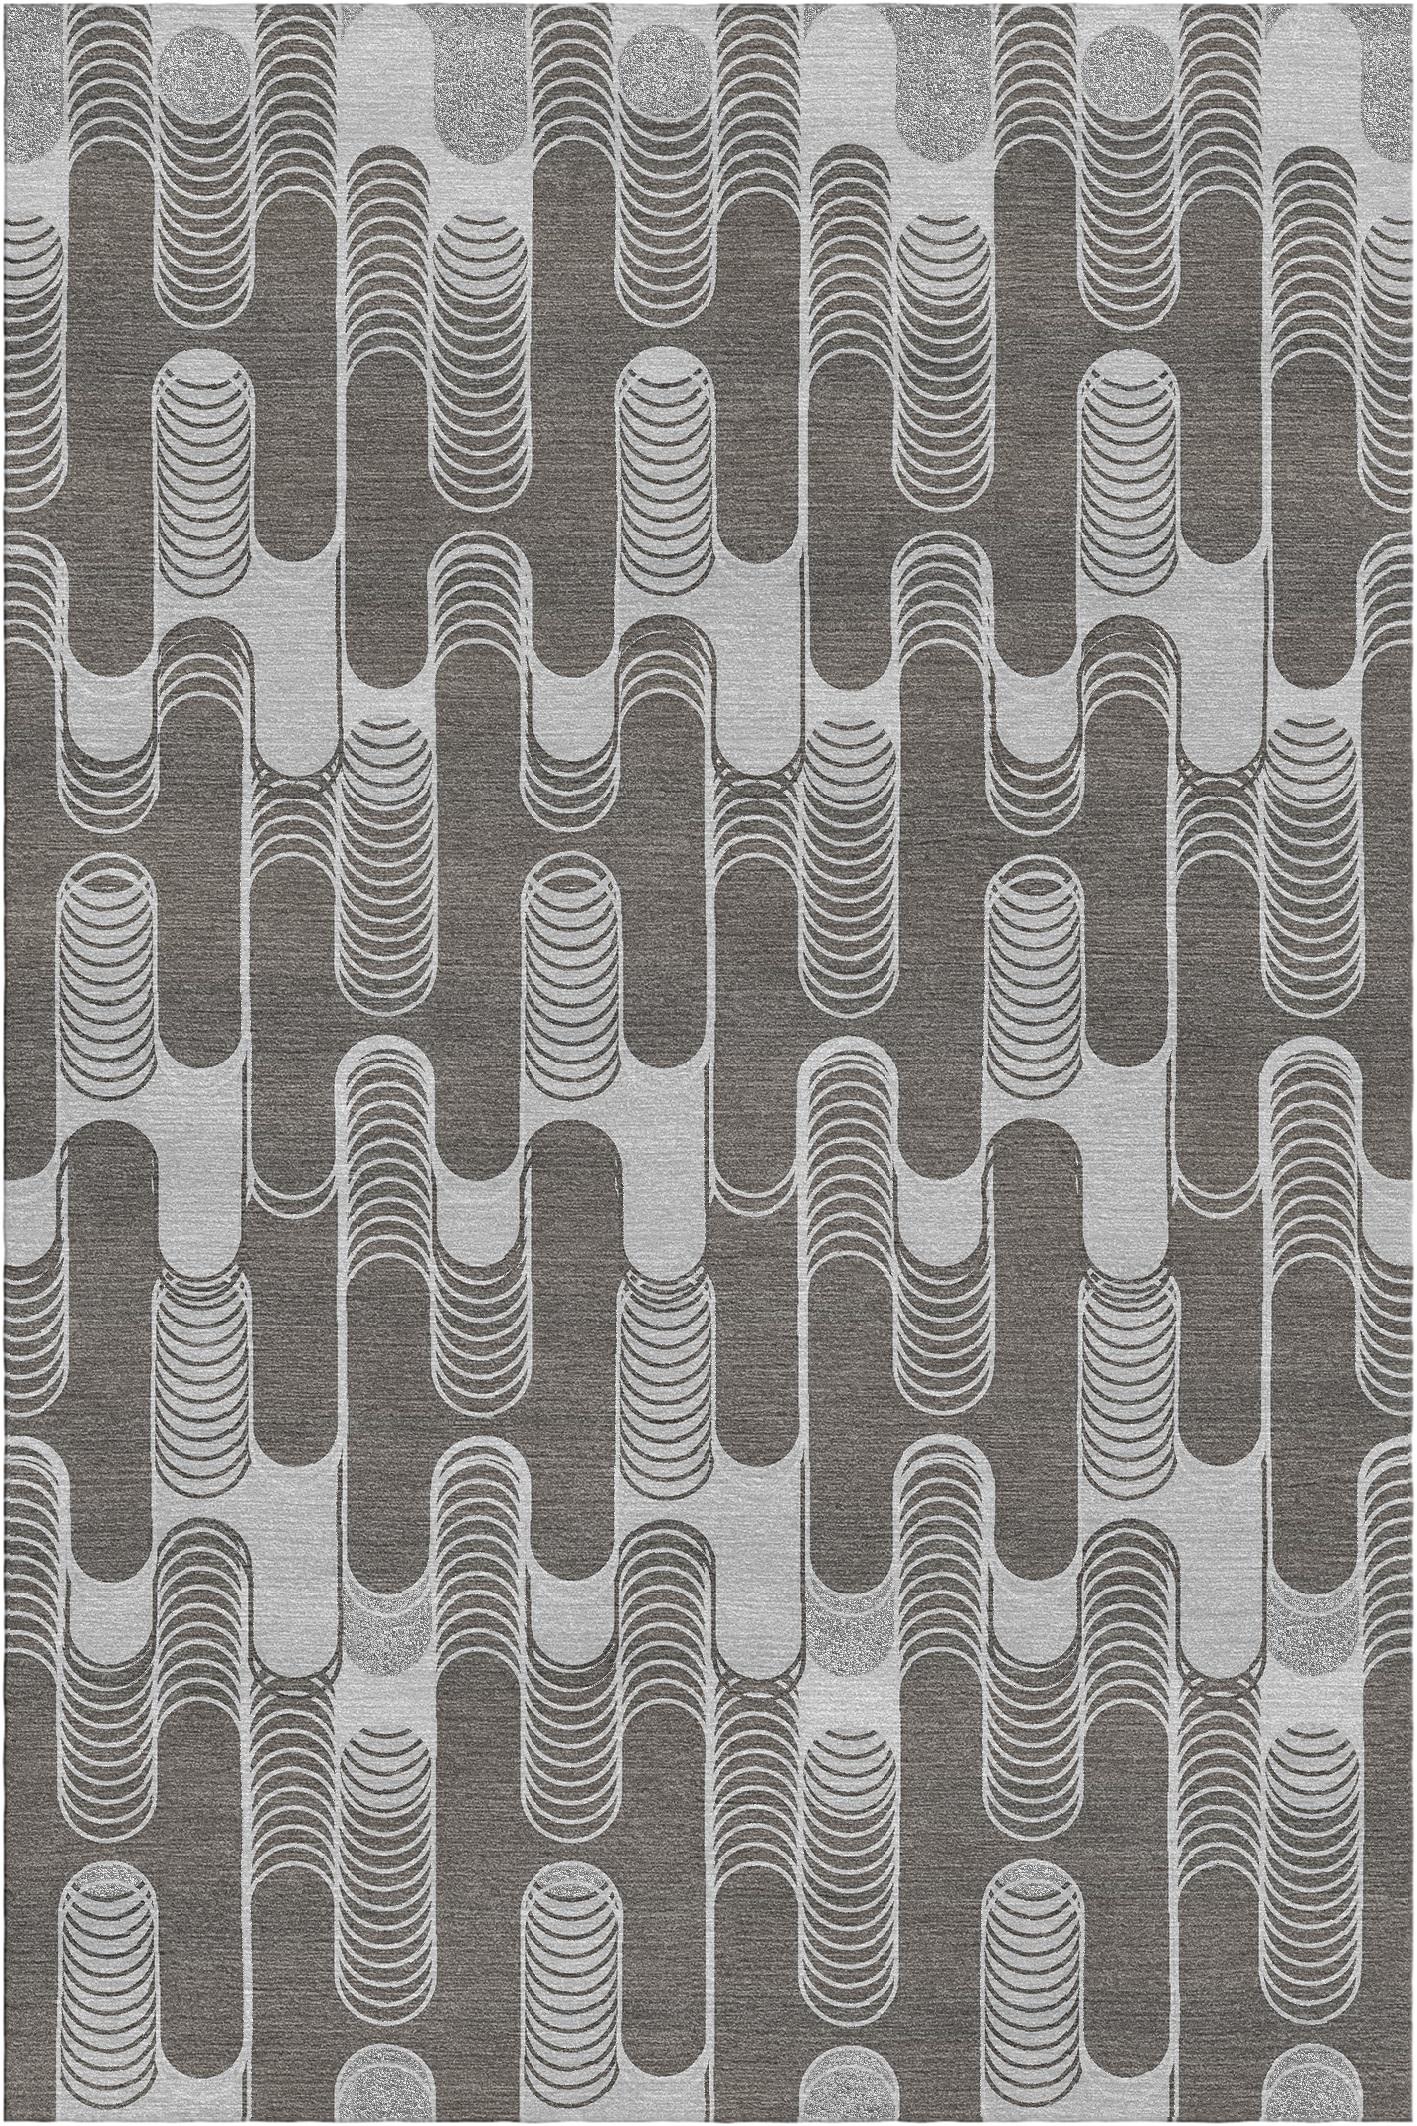 Settanta-Teppich II von Giulio Brambilla.
Abmessungen: D 300 x B 200 x H 1,5 cm.
MATERIALIEN: NZ-Wolle, Bambusseide.
Erhältlich in anderen Farben.

Mit seinem modernen, geometrischen Design und seiner starken visuellen Wirkung wird dieser Teppich